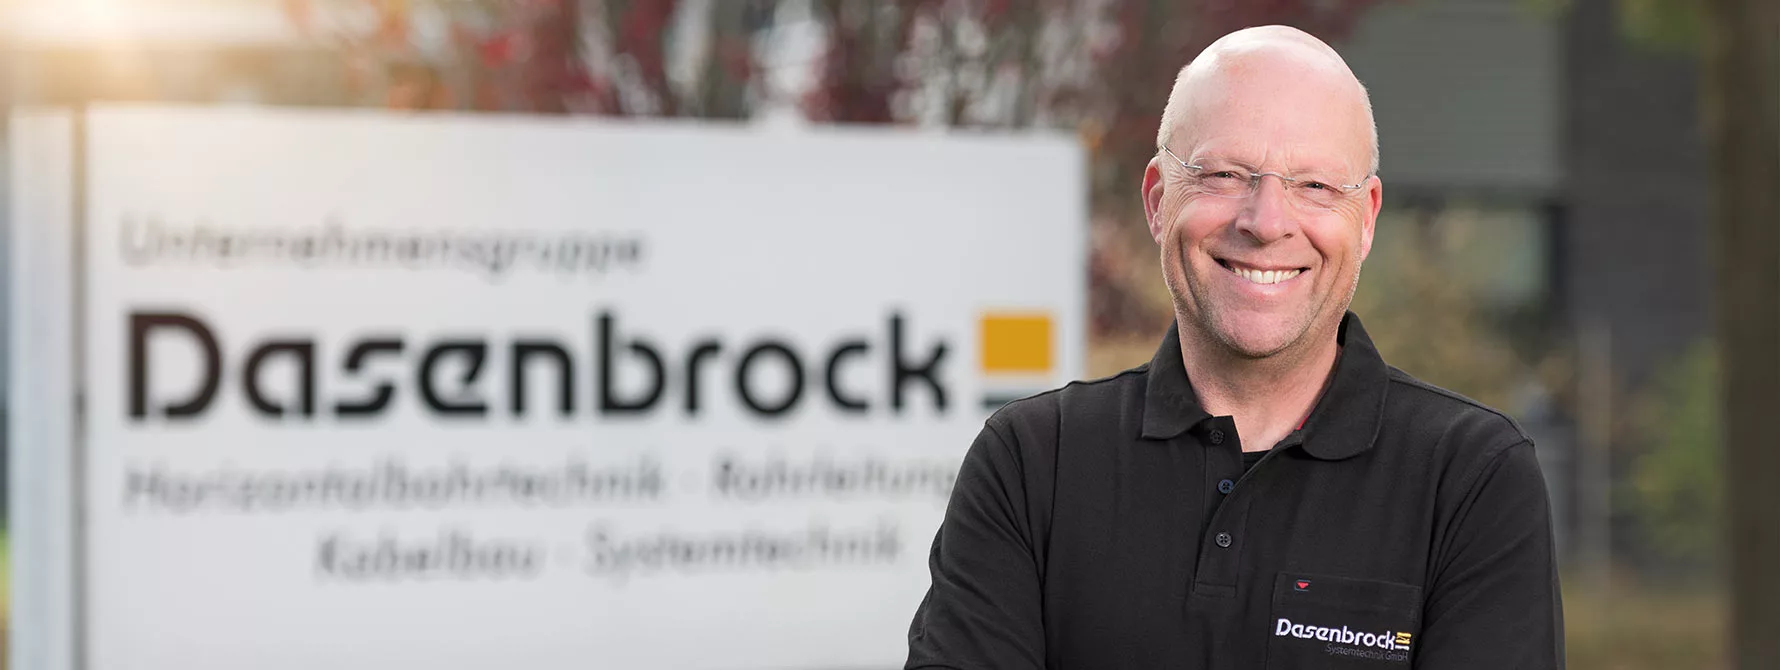 Thomas Dasenbrock, Geschäftsführer der Dasenbrock Rohr- und Kabelverlegung GmbH aus Vechta in Niedersachsen